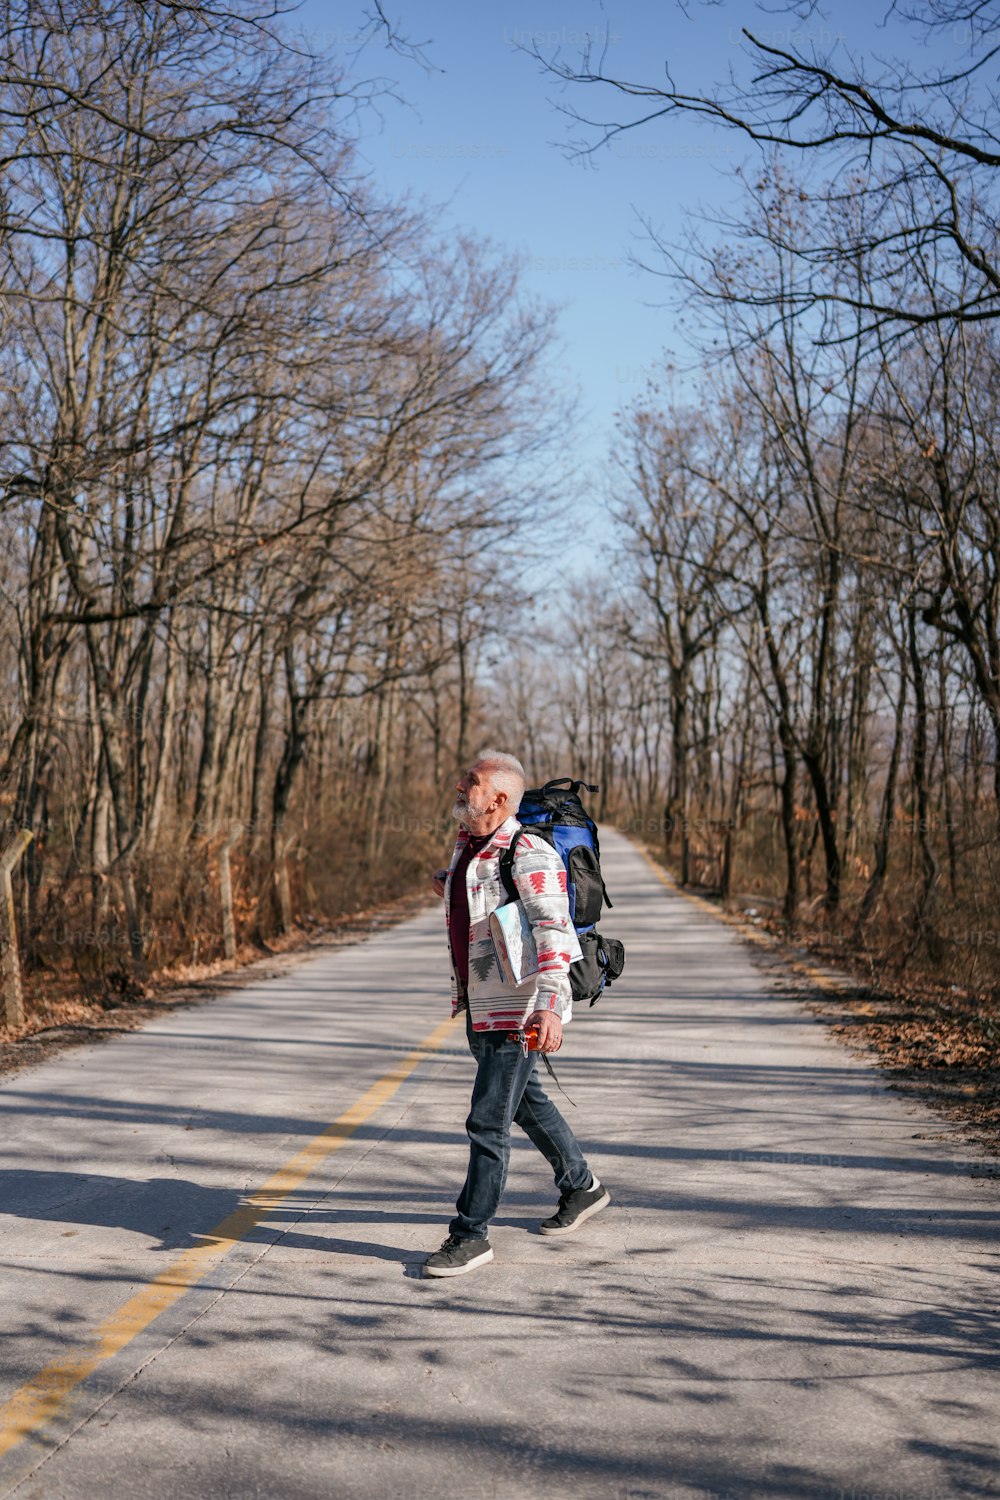 Un hombre caminando por una carretera con una mochila en la espalda